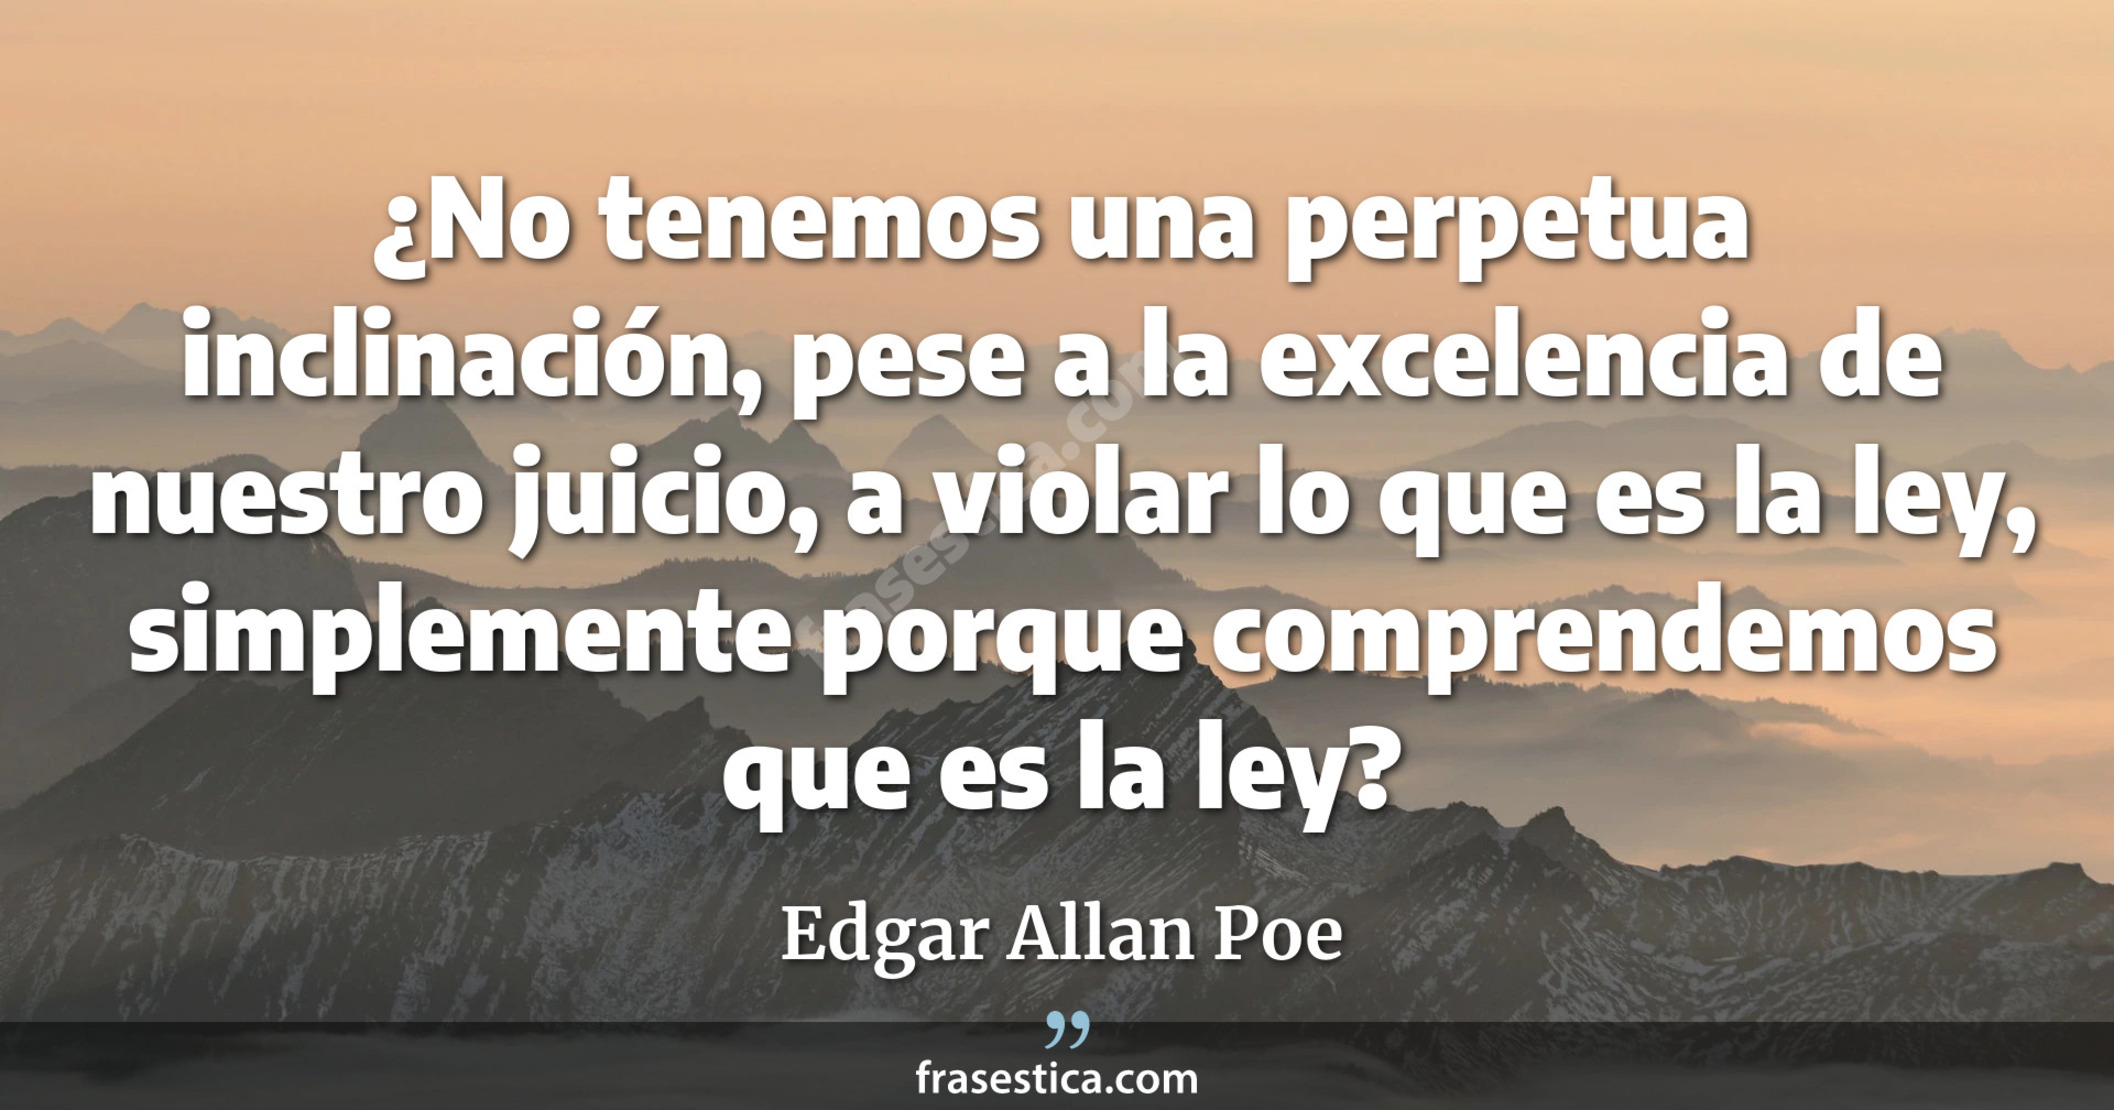 ¿No tenemos una perpetua inclinación, pese a la excelencia de nuestro juicio, a violar lo que es la ley, simplemente porque comprendemos que es la ley? - Edgar Allan Poe